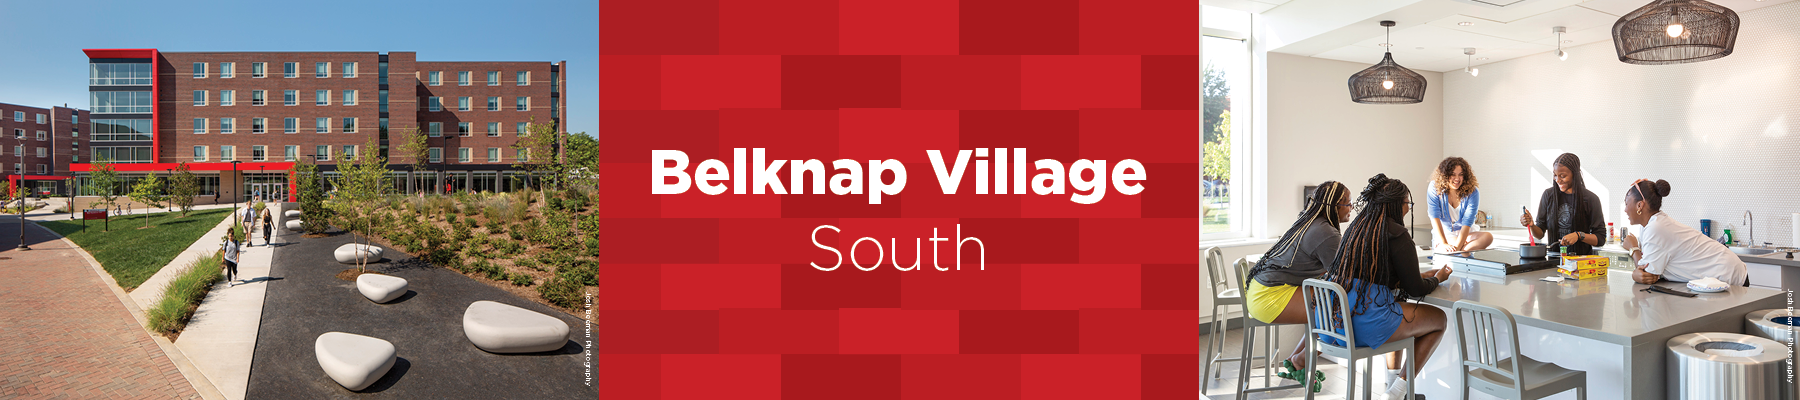 Belknap Village South